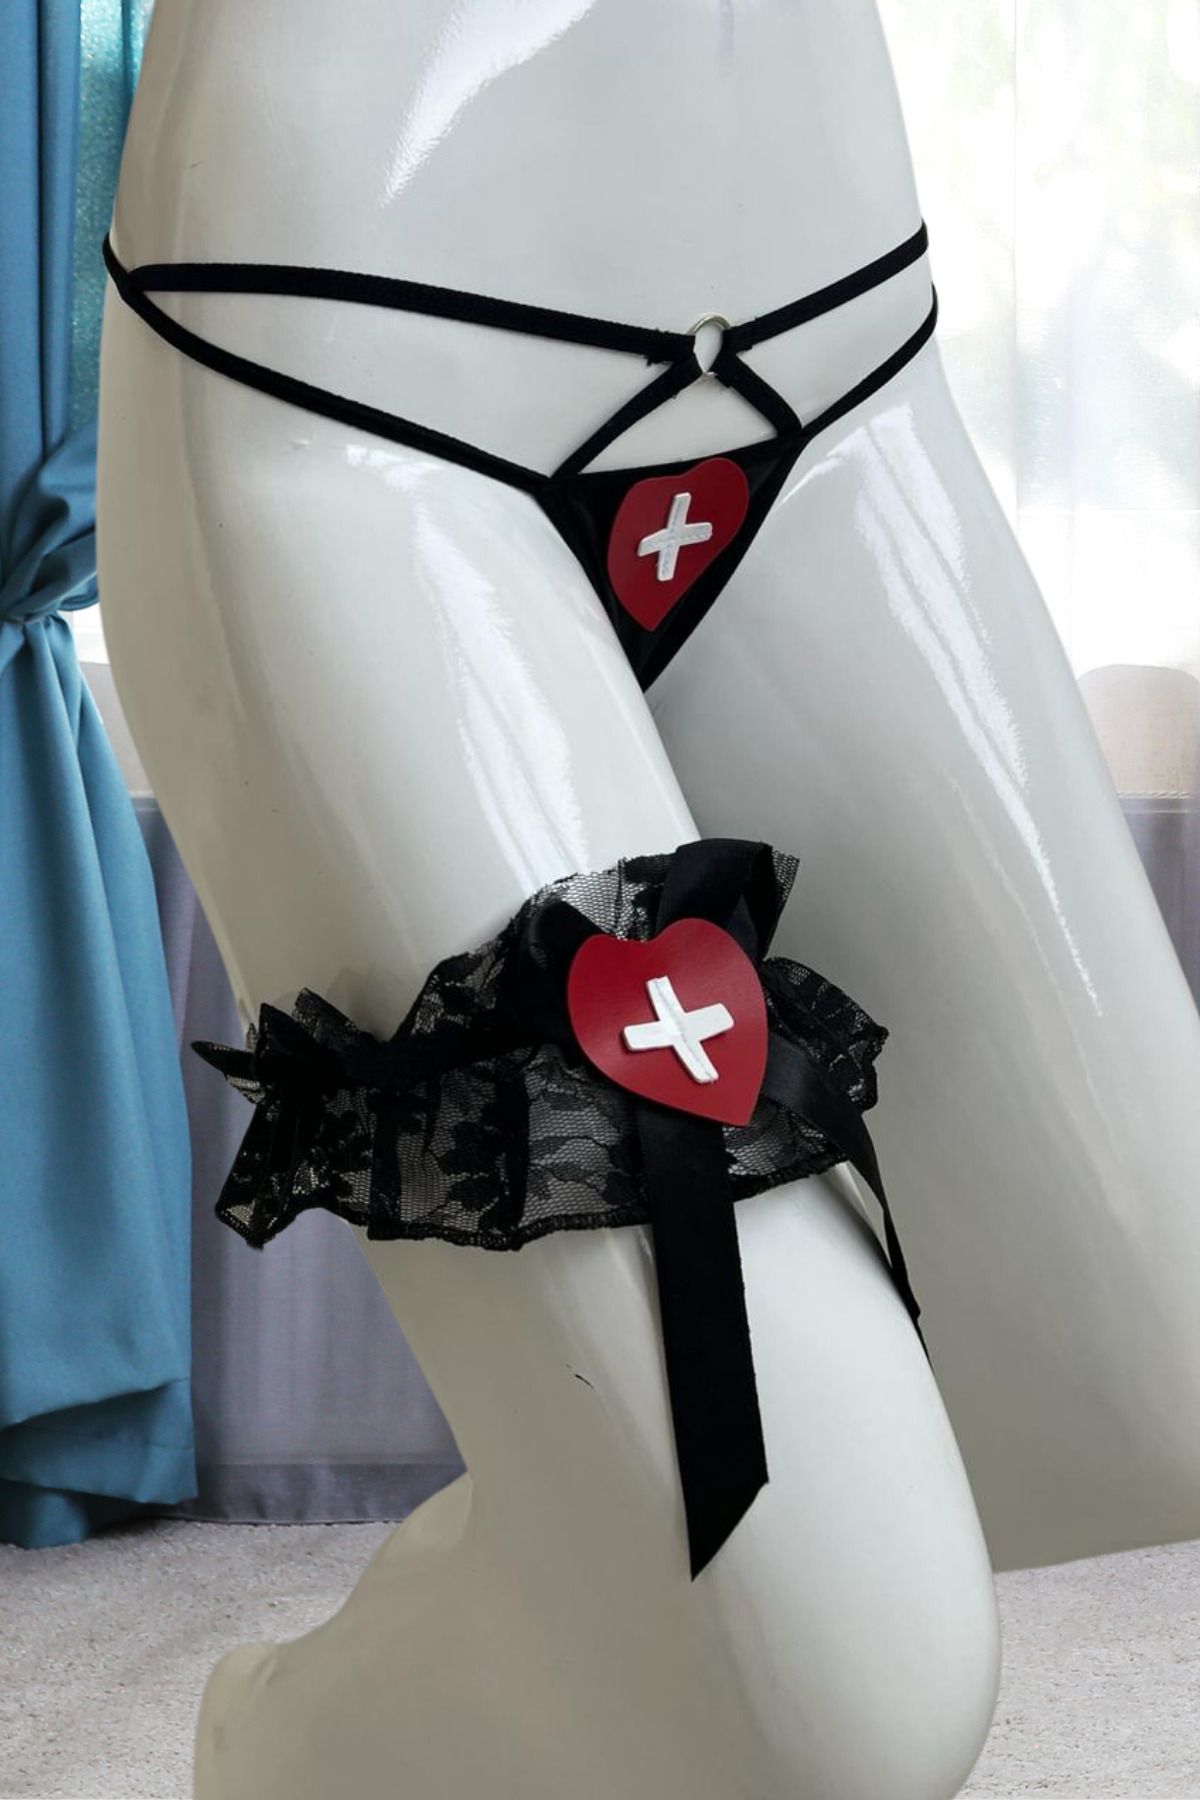 Anastasia Underwear Fantezi Bacak Banttı ve Tanga Külot İkili Set M/L Bedene Uygundur 85955